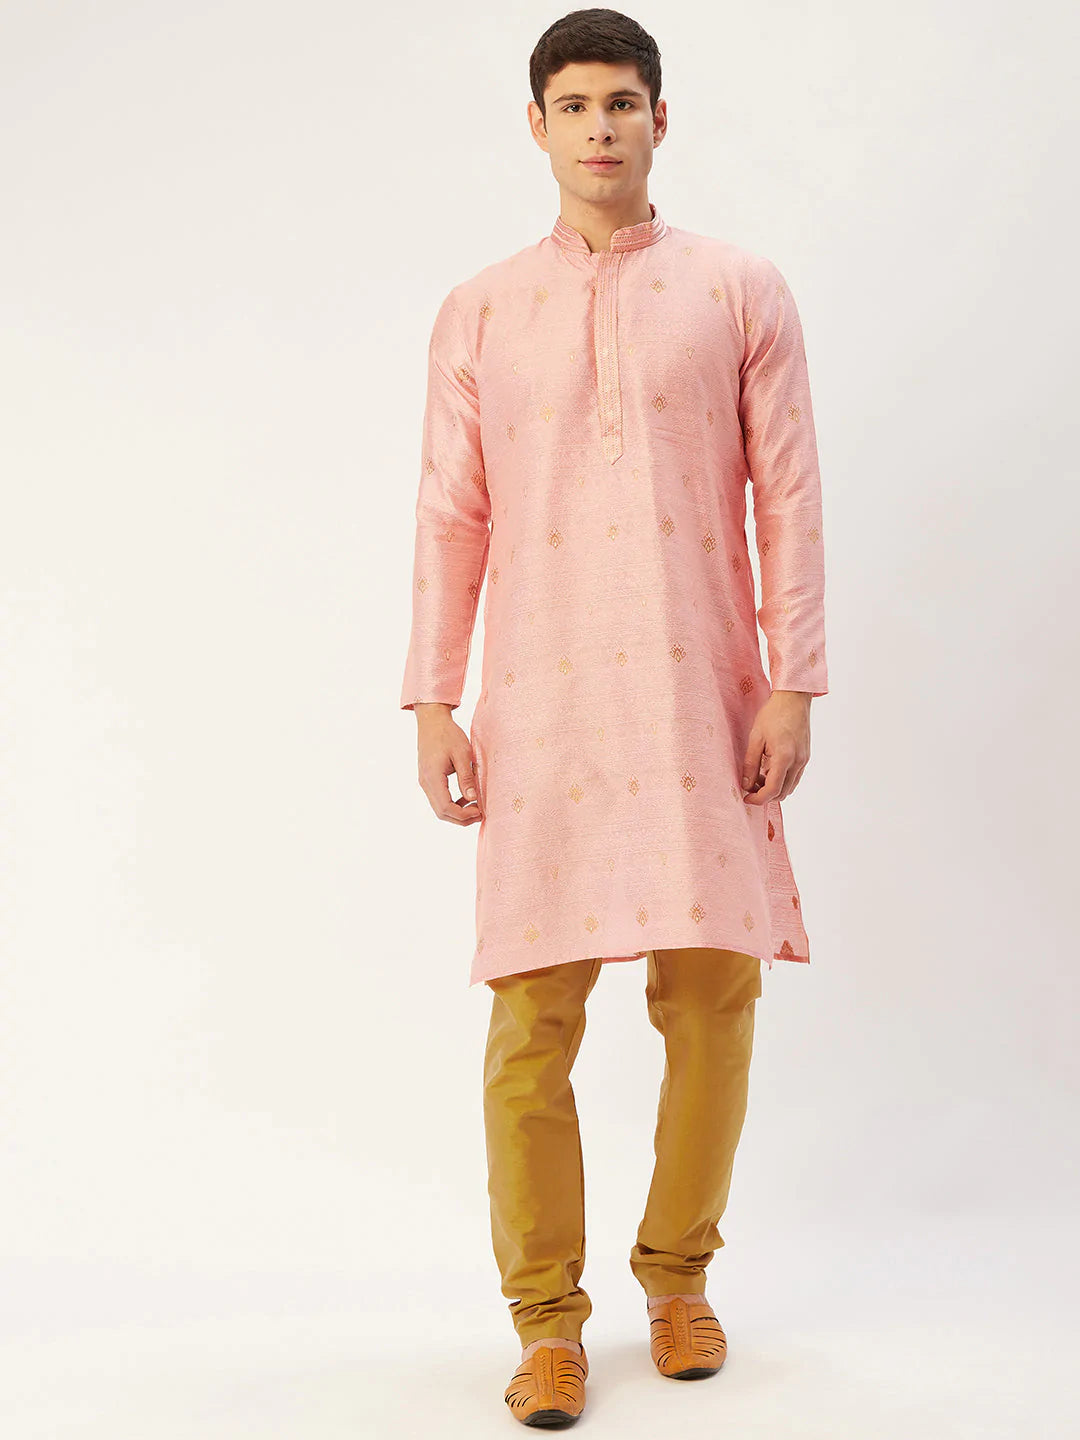 Men's Pink Jacquard Silk Woven Design Kurta Top